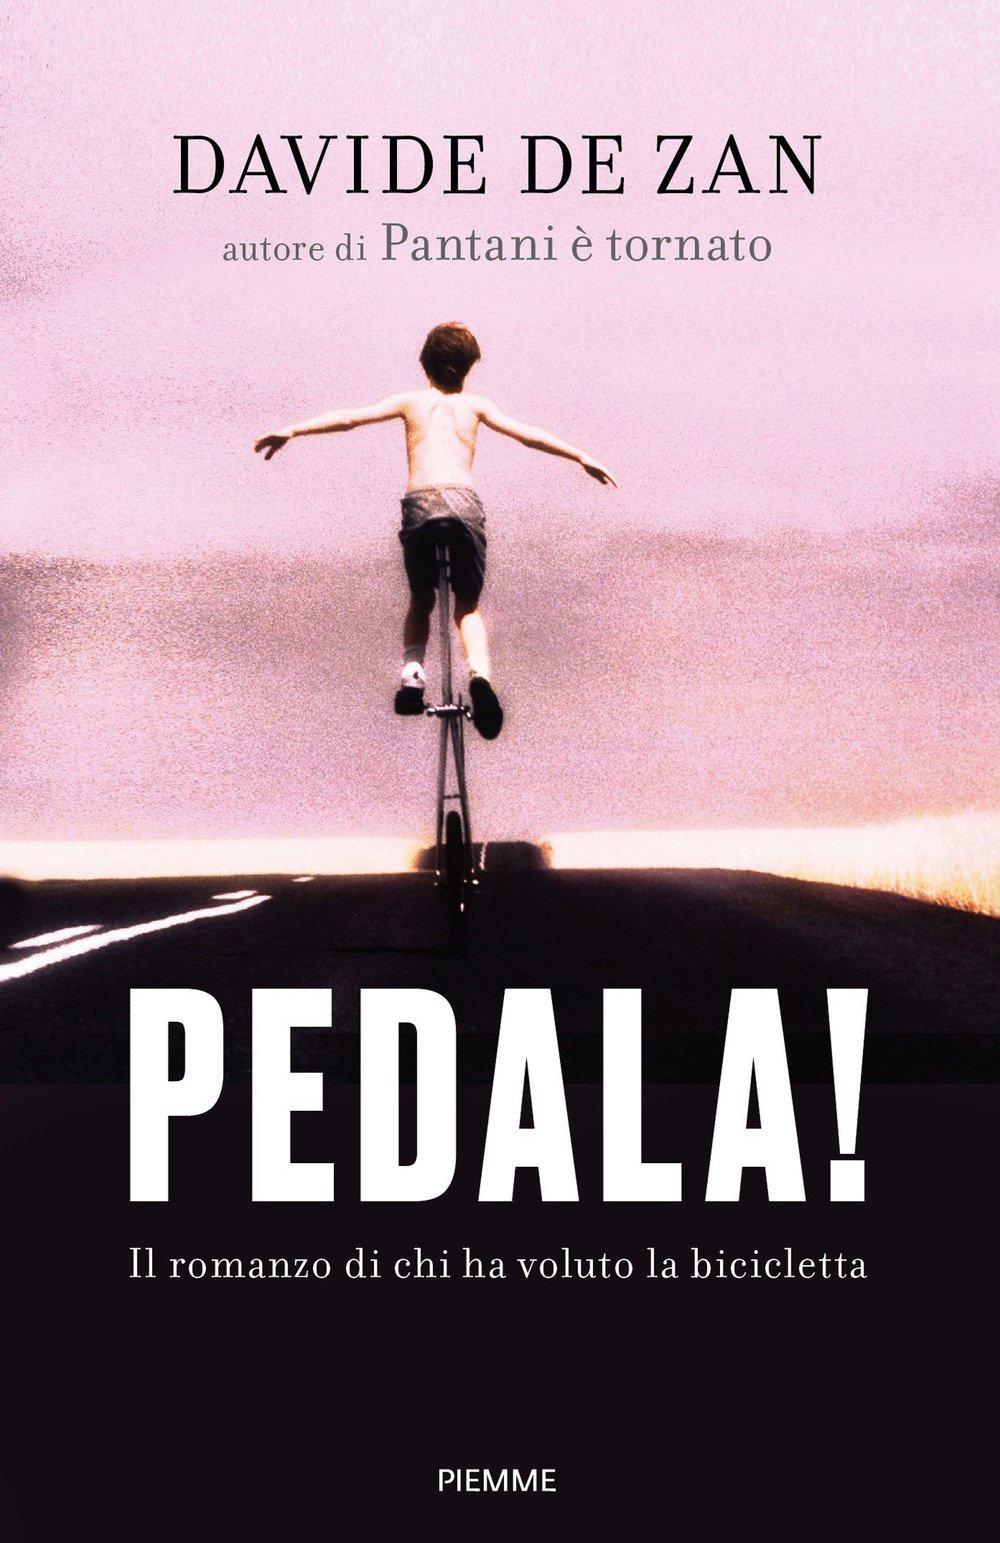 Pedala! Il romanzo di chi ha voluto la bicicletta Scaricare Leggi online Total Downloads: 18011 Formats: djvu pdf epub kindle Rated: 8/10 (4530 votes) Pedala!